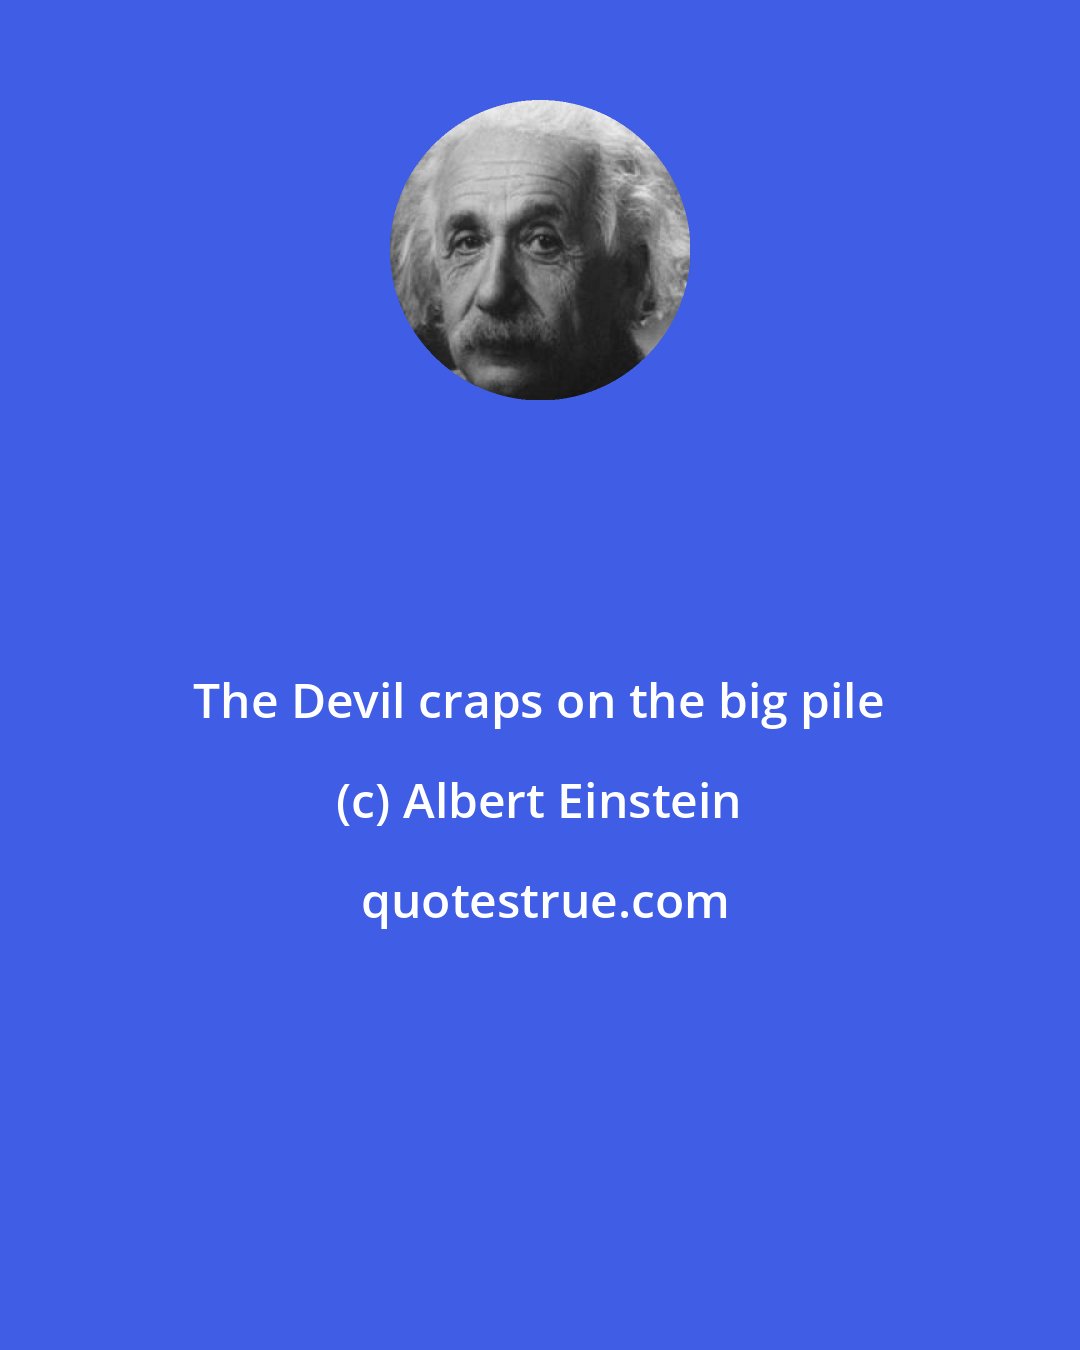 Albert Einstein: The Devil craps on the big pile